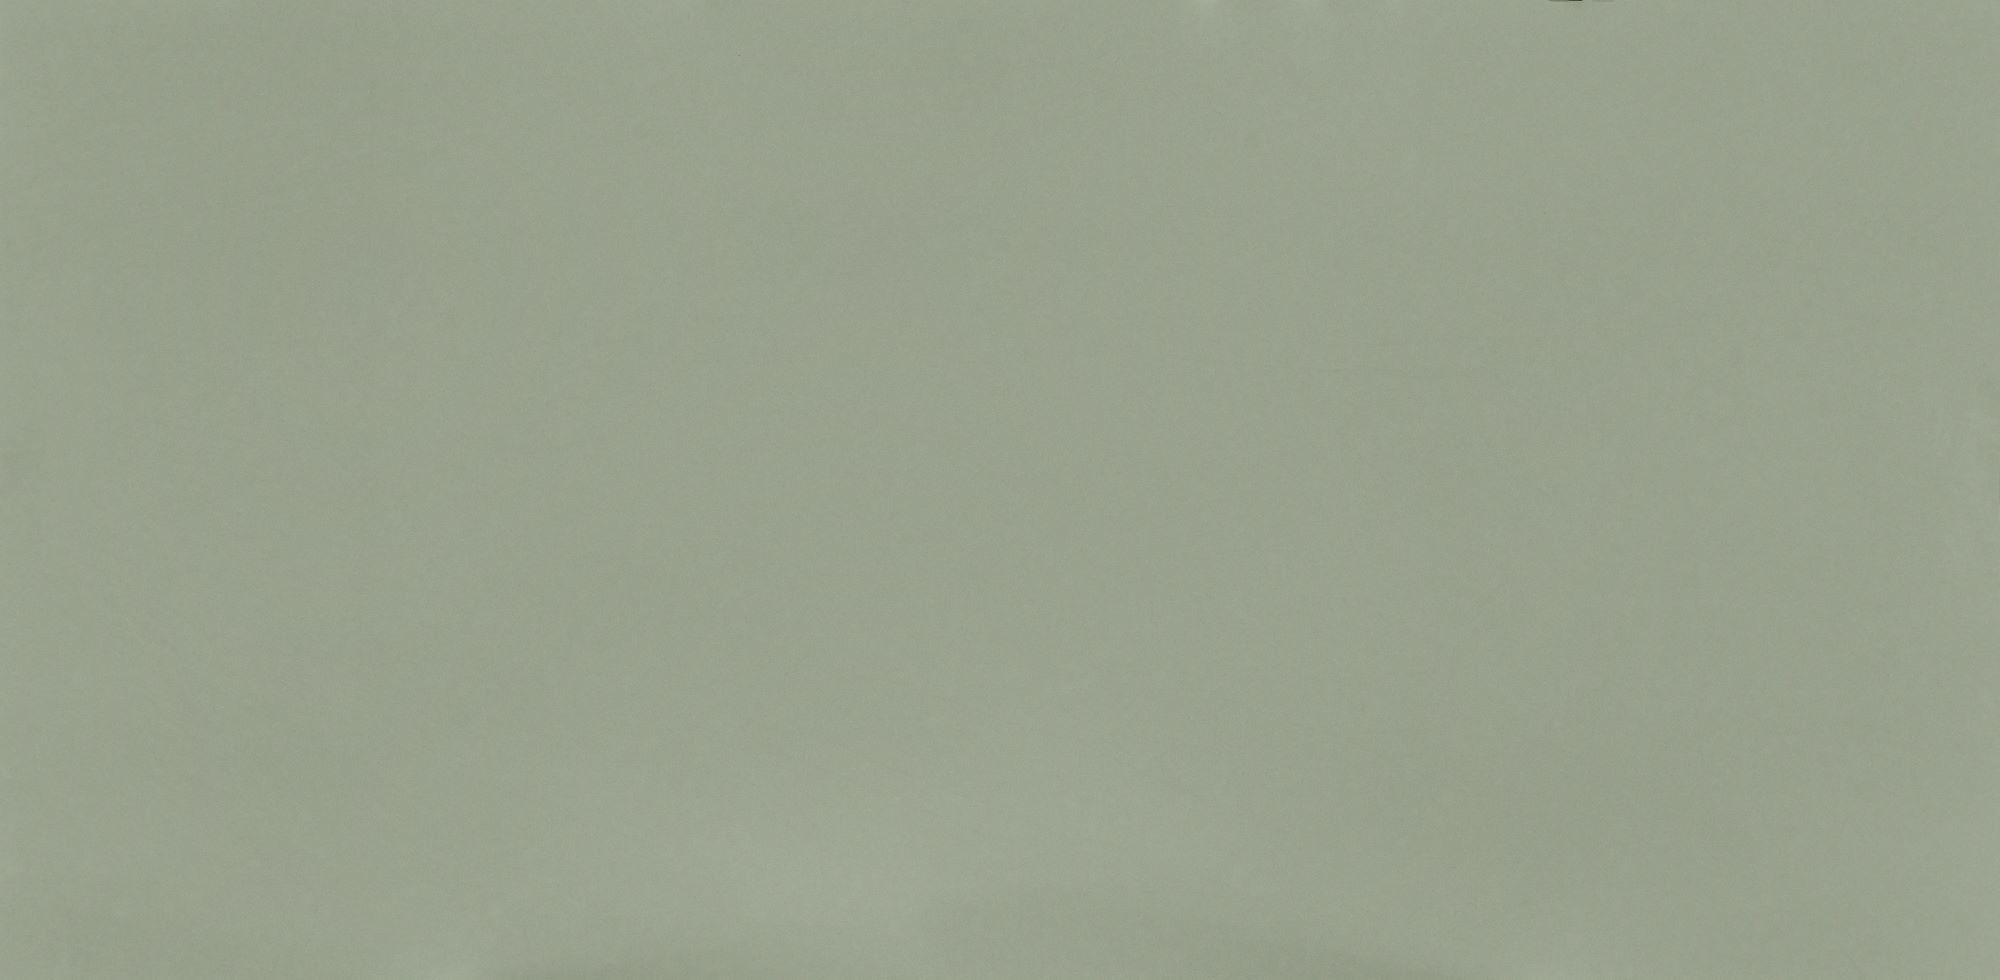 Posidonia Green - Silestone Quartz